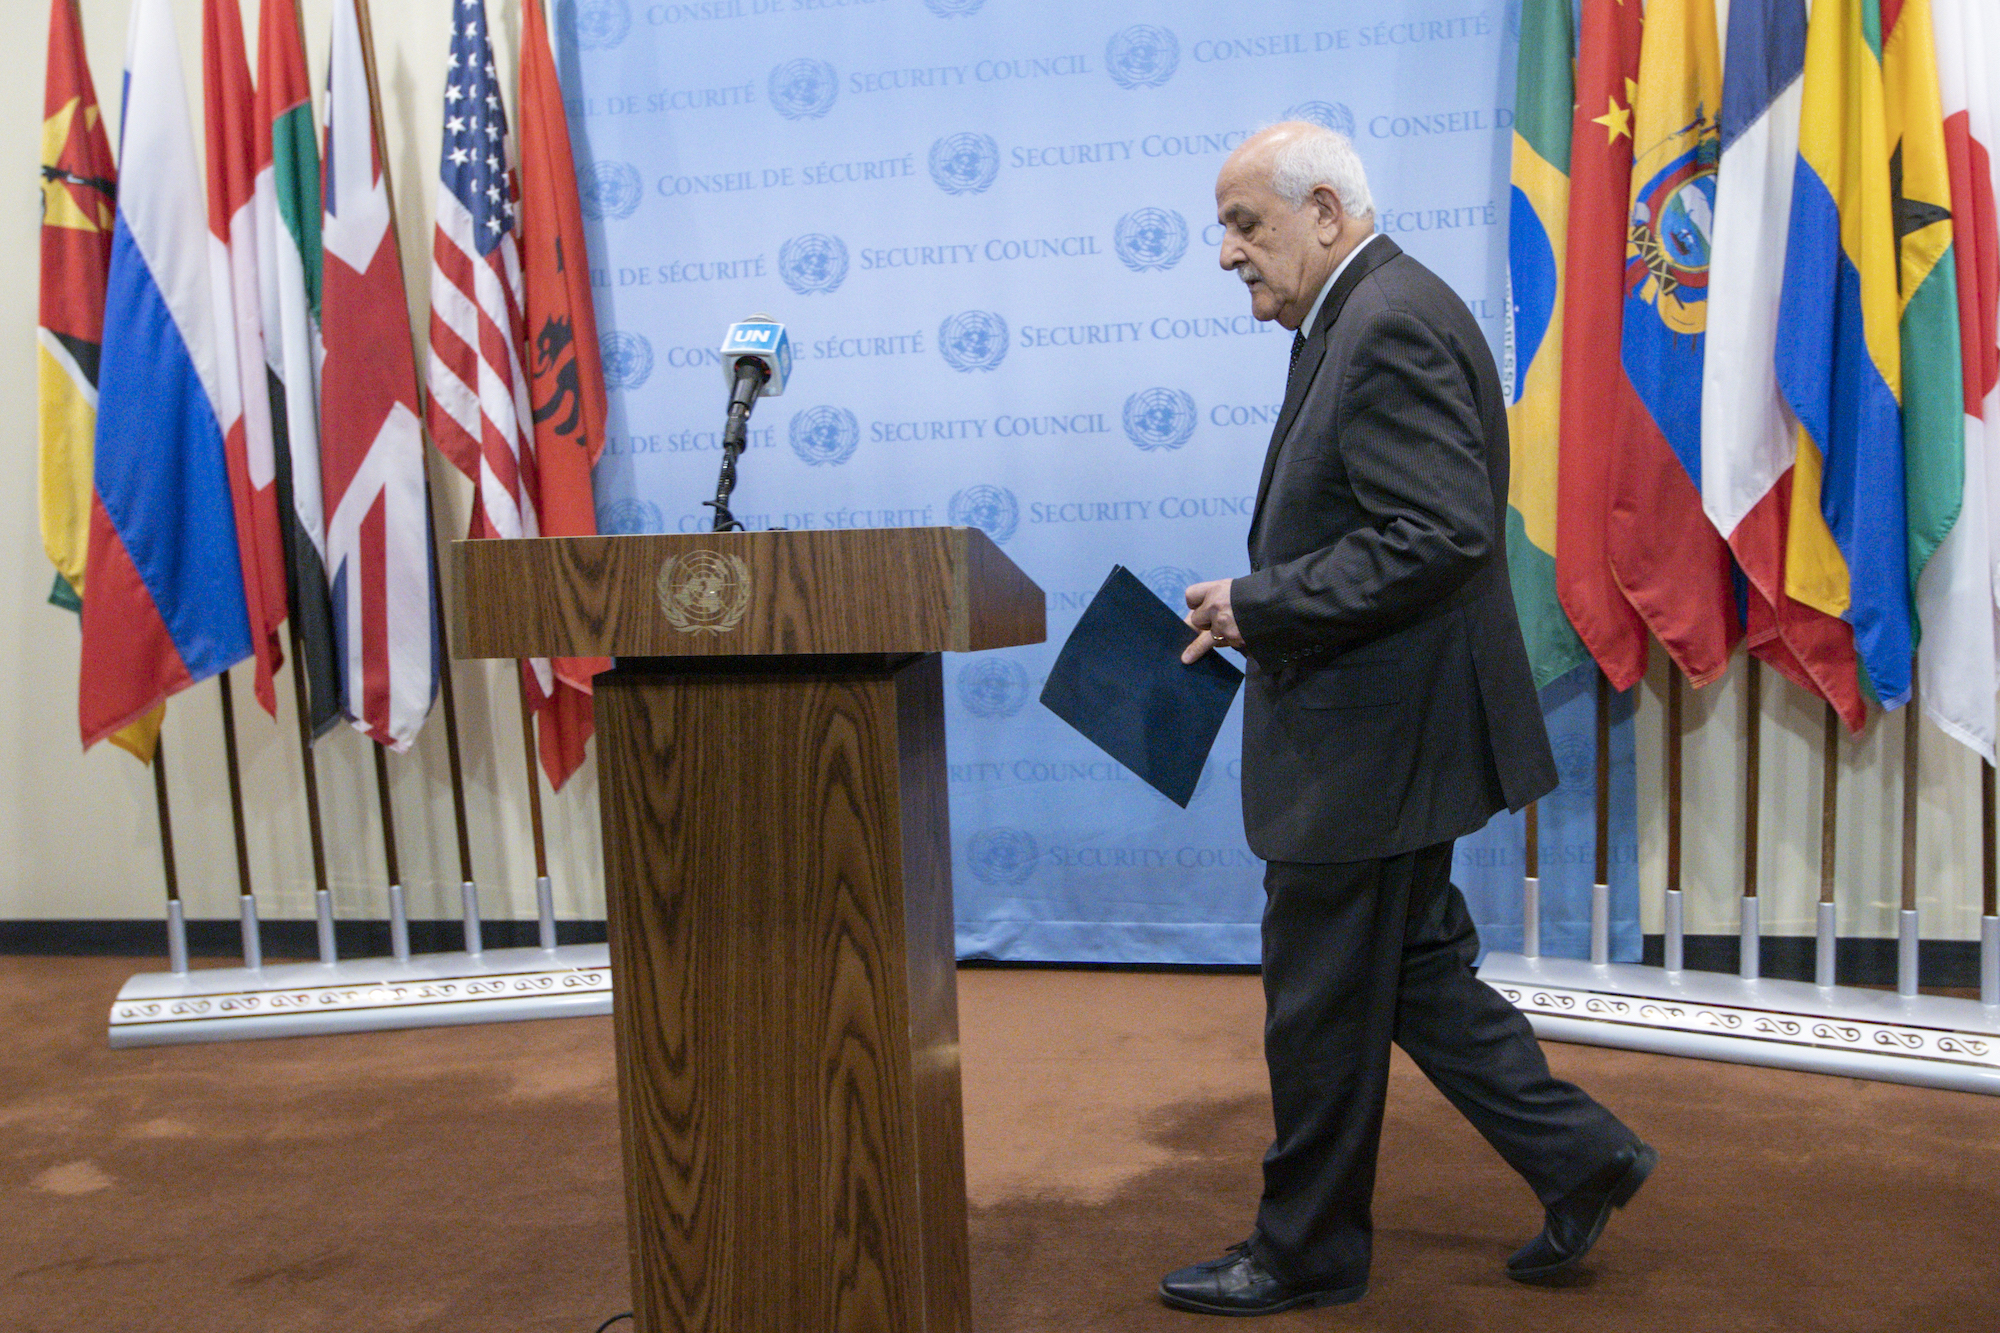 L'ambassadeur Riyad Mansour, observateur permanent de l'État de Palestine auprès des Nations Unies, arrive dimanche pour s'adresser aux journalistes lors d'une conférence de presse avant la réunion du Conseil de sécurité de l'ONU.